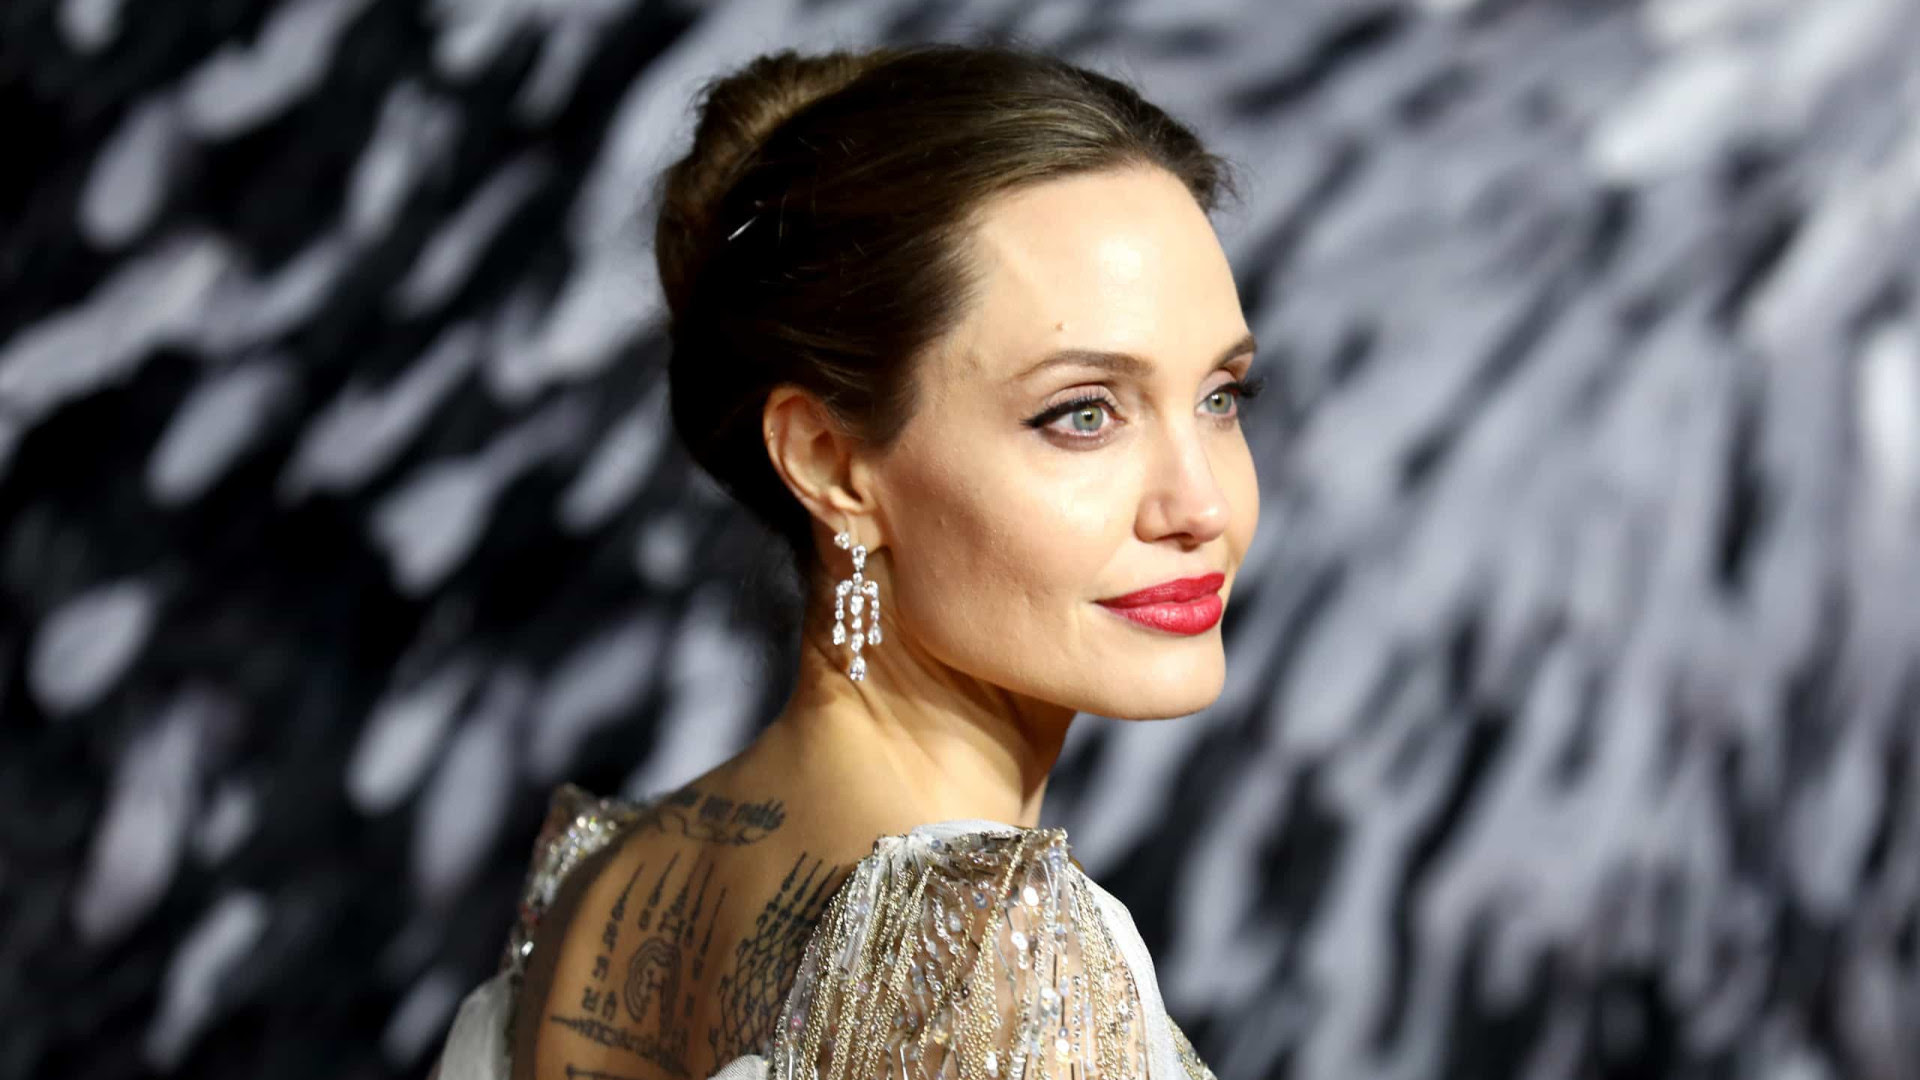 'Raramente acordo me achando boa o suficiente', afirma Angelina Jolie sobre fama